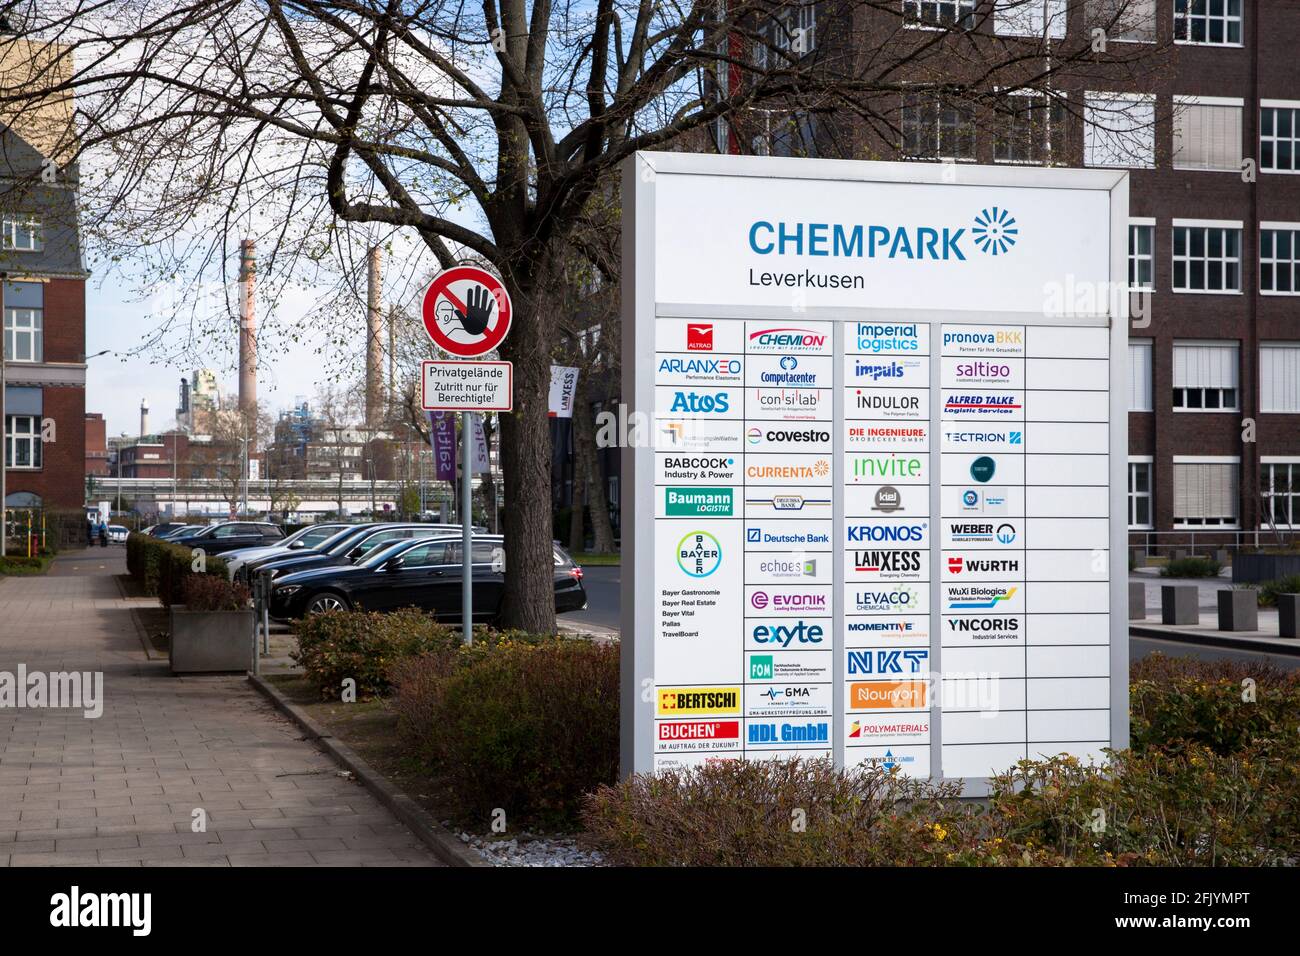 Firmenschilder an einer Zufahrtsstraße zum Chempark, Leverkusen, Nordrhein-Westfalen, Deutschland, Firmensilder an einer Einfahrt zum Chempark, Leverk Stockfoto